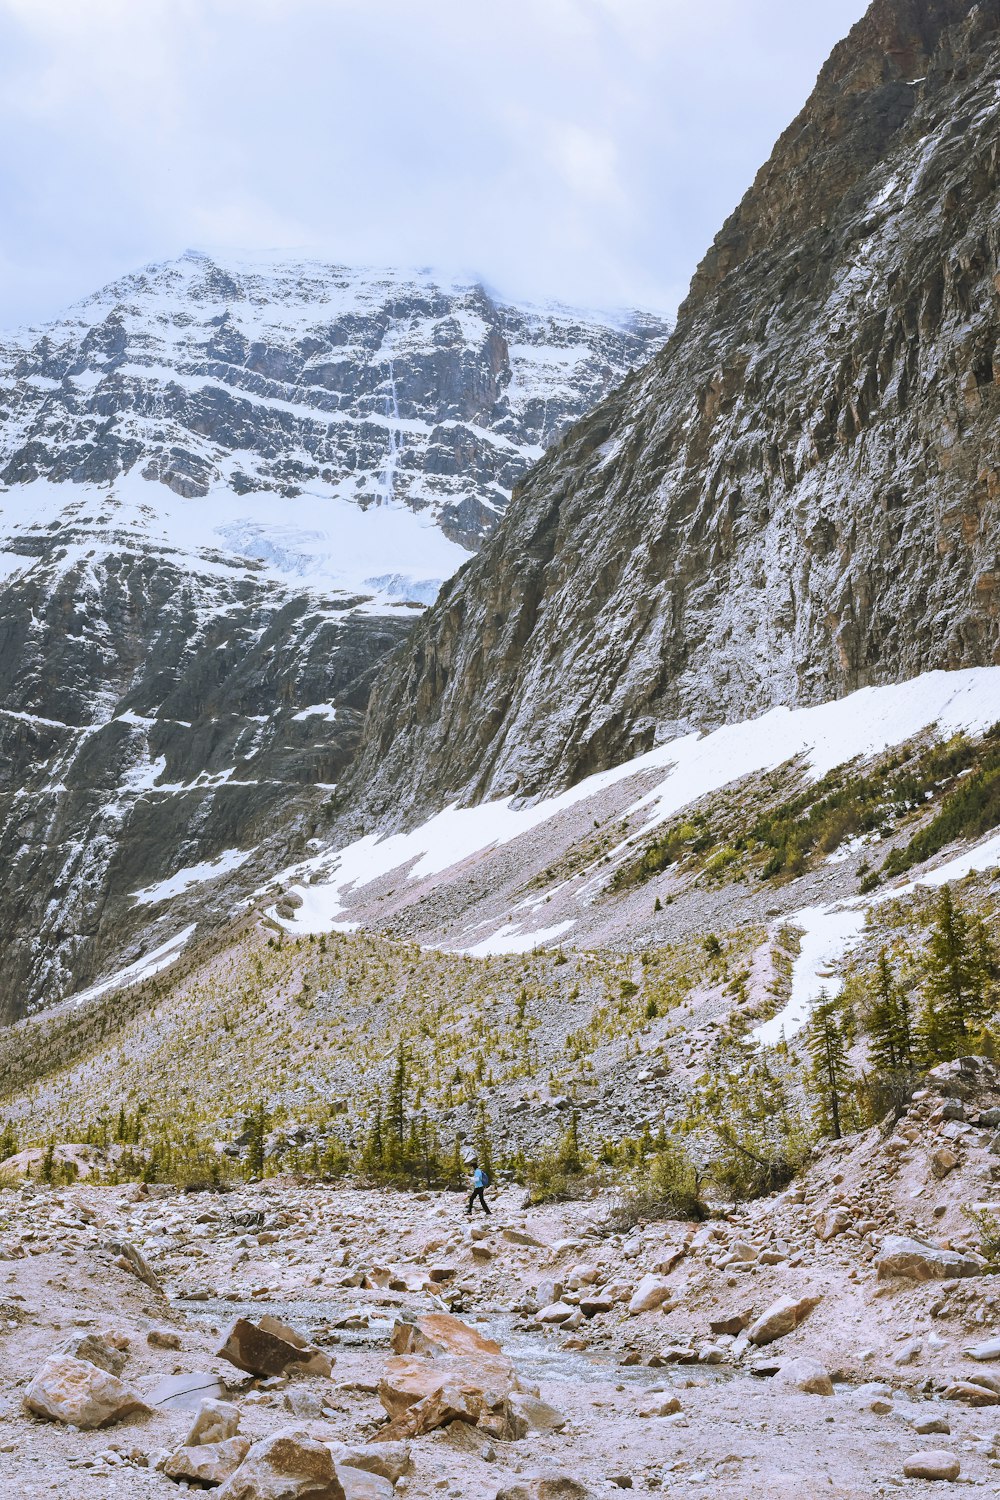 Una persona che cammina su una montagna rocciosa